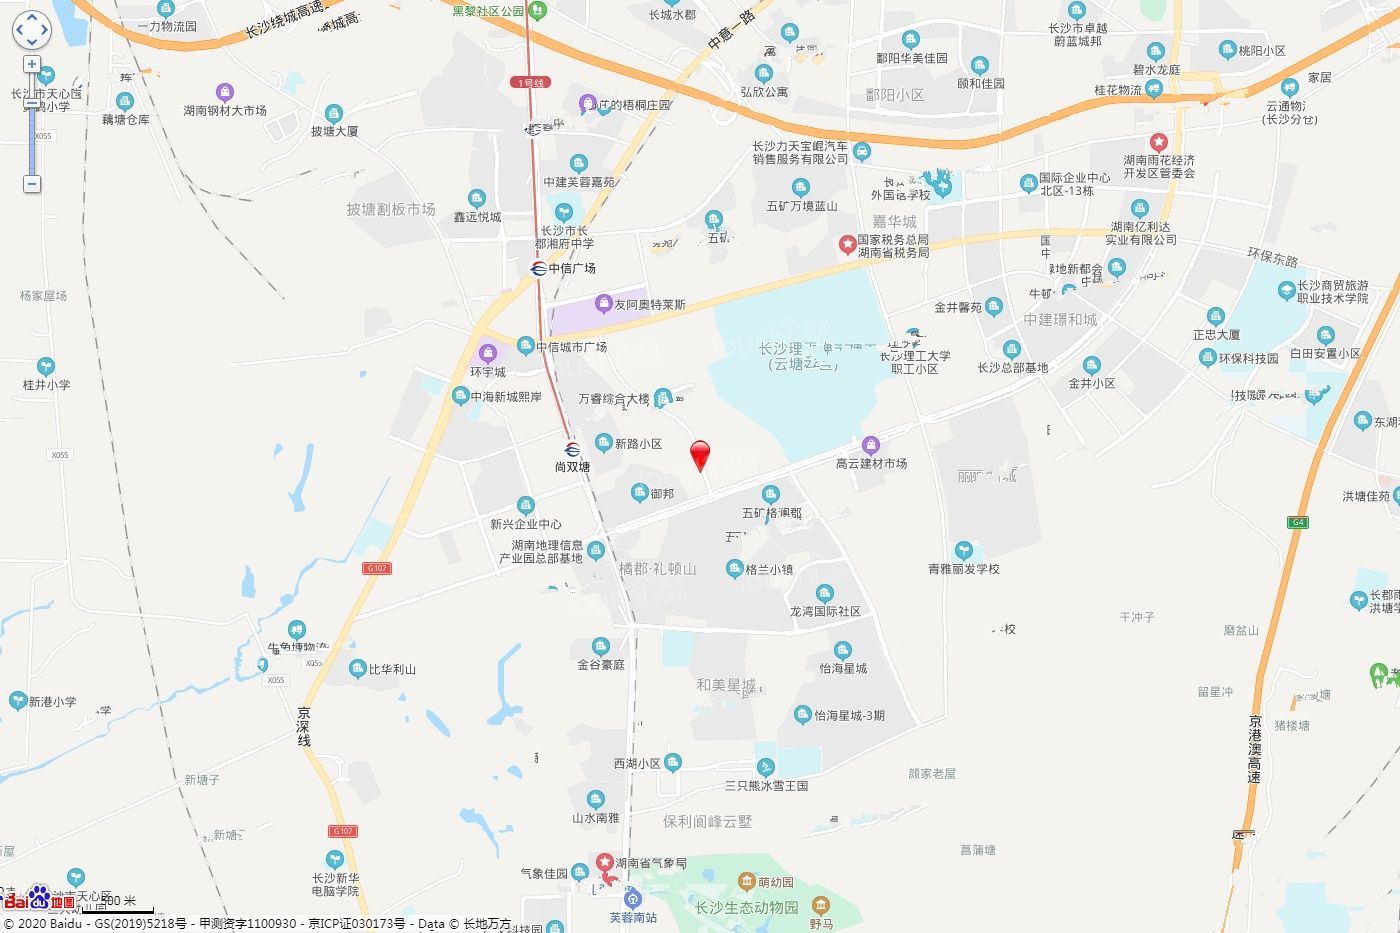 蓝光雍锦府位置图